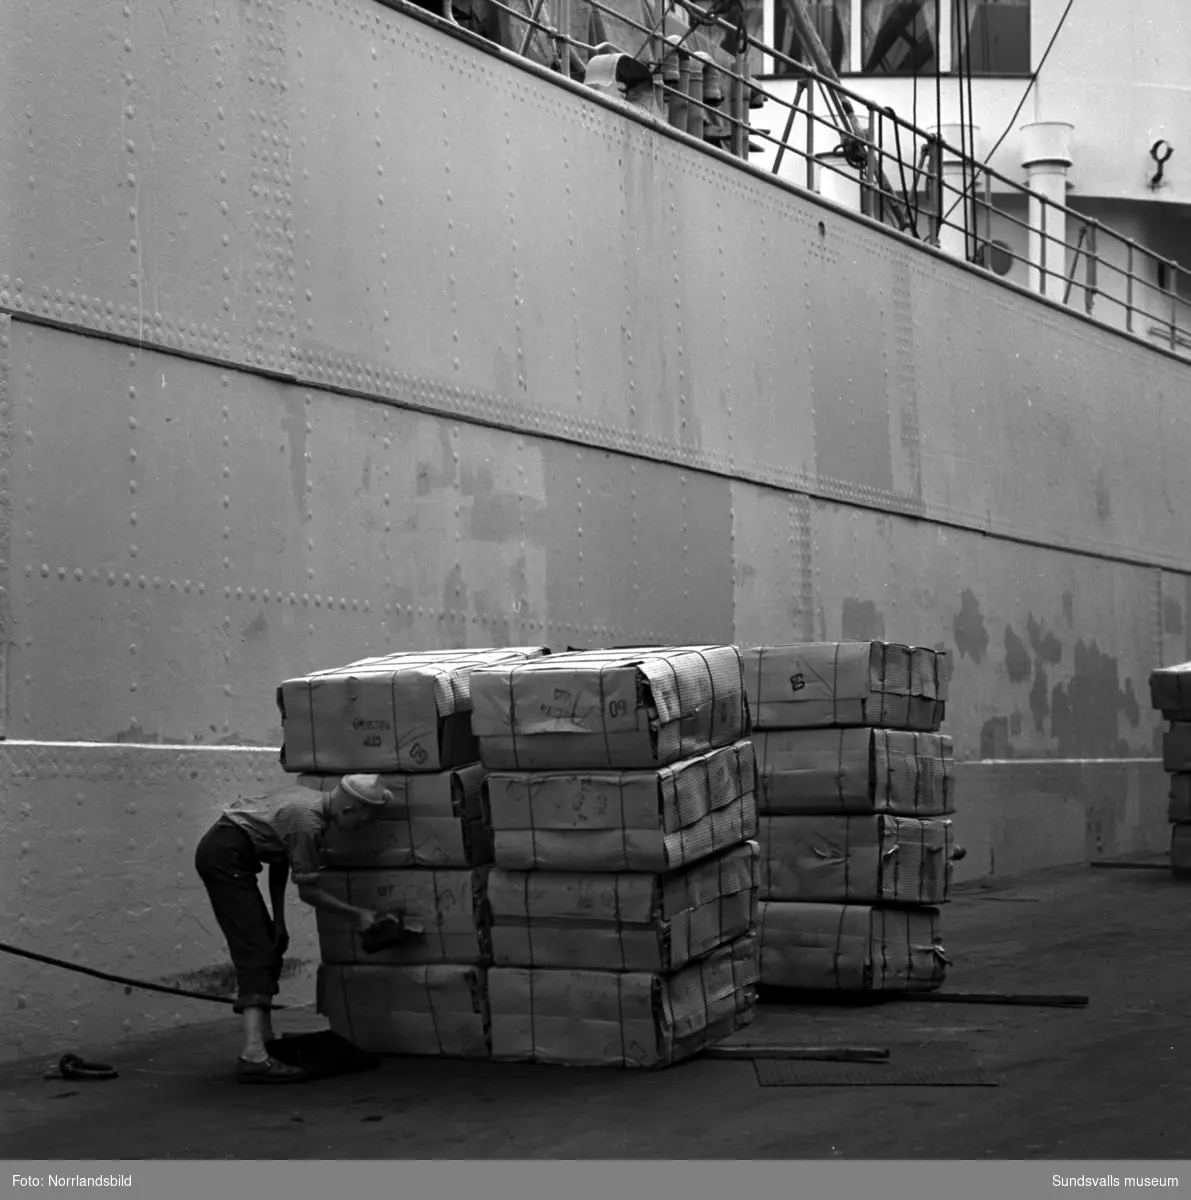 Lastning av pappersmassa för export, fartyget Nordstjernan i Östrand.